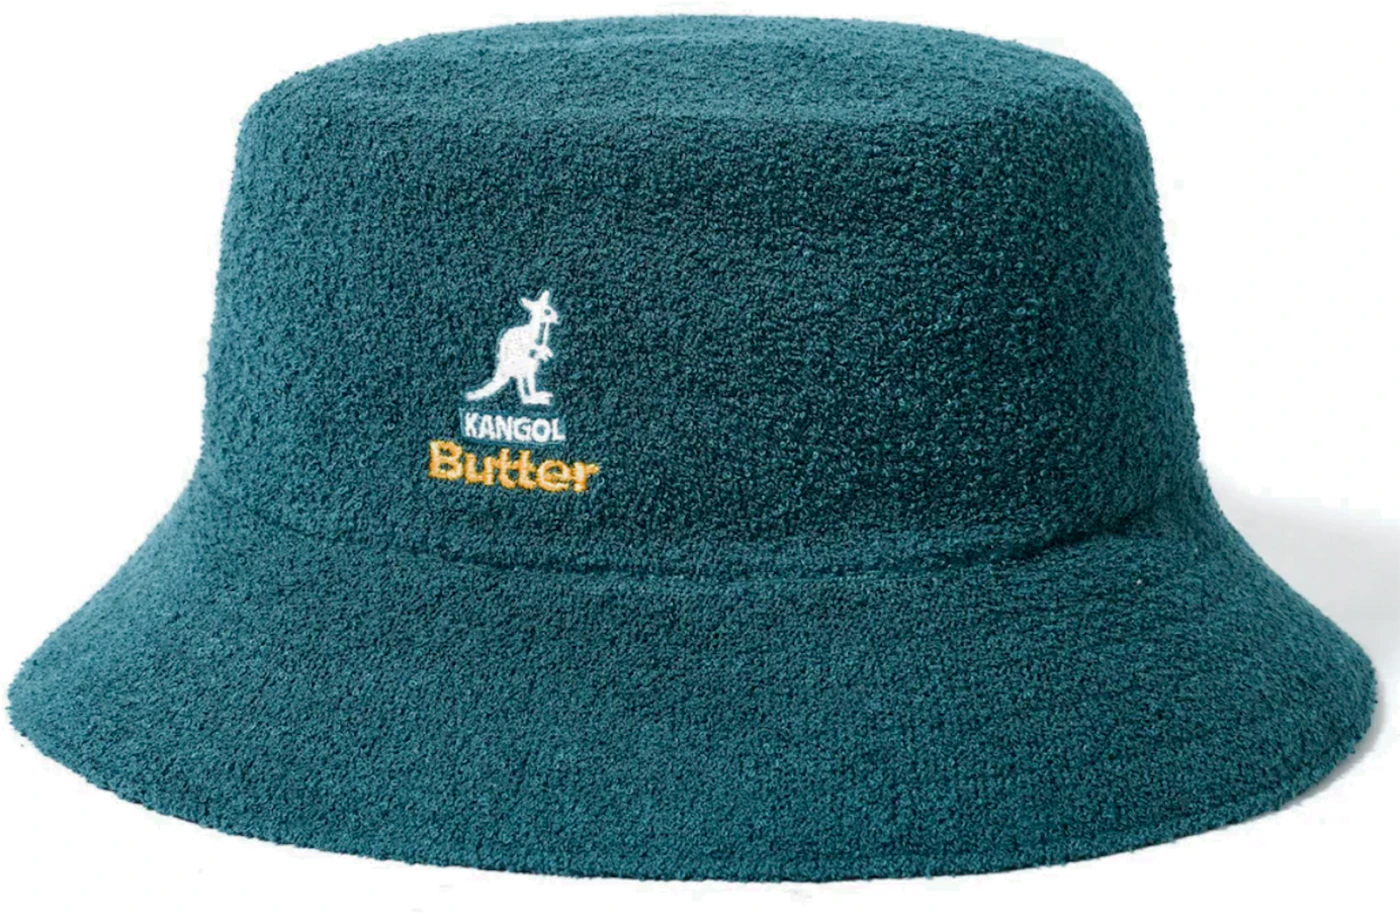 Butter Goods x Kangol Bermuda Bucket Hat Forest Green Men's - FW22 - US